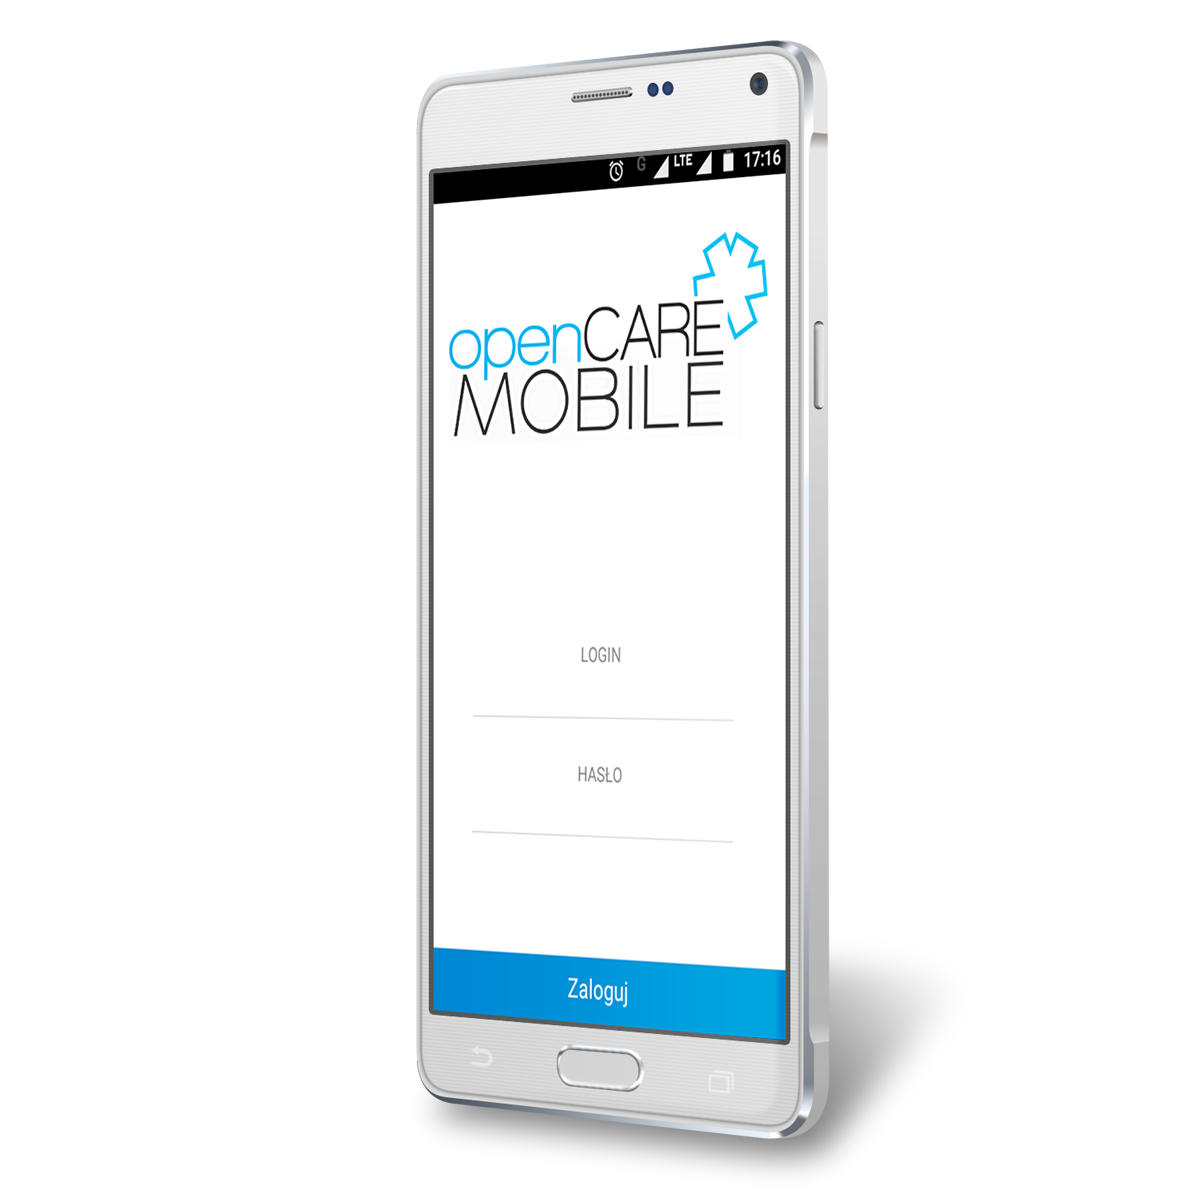 OpenCARE Mobile